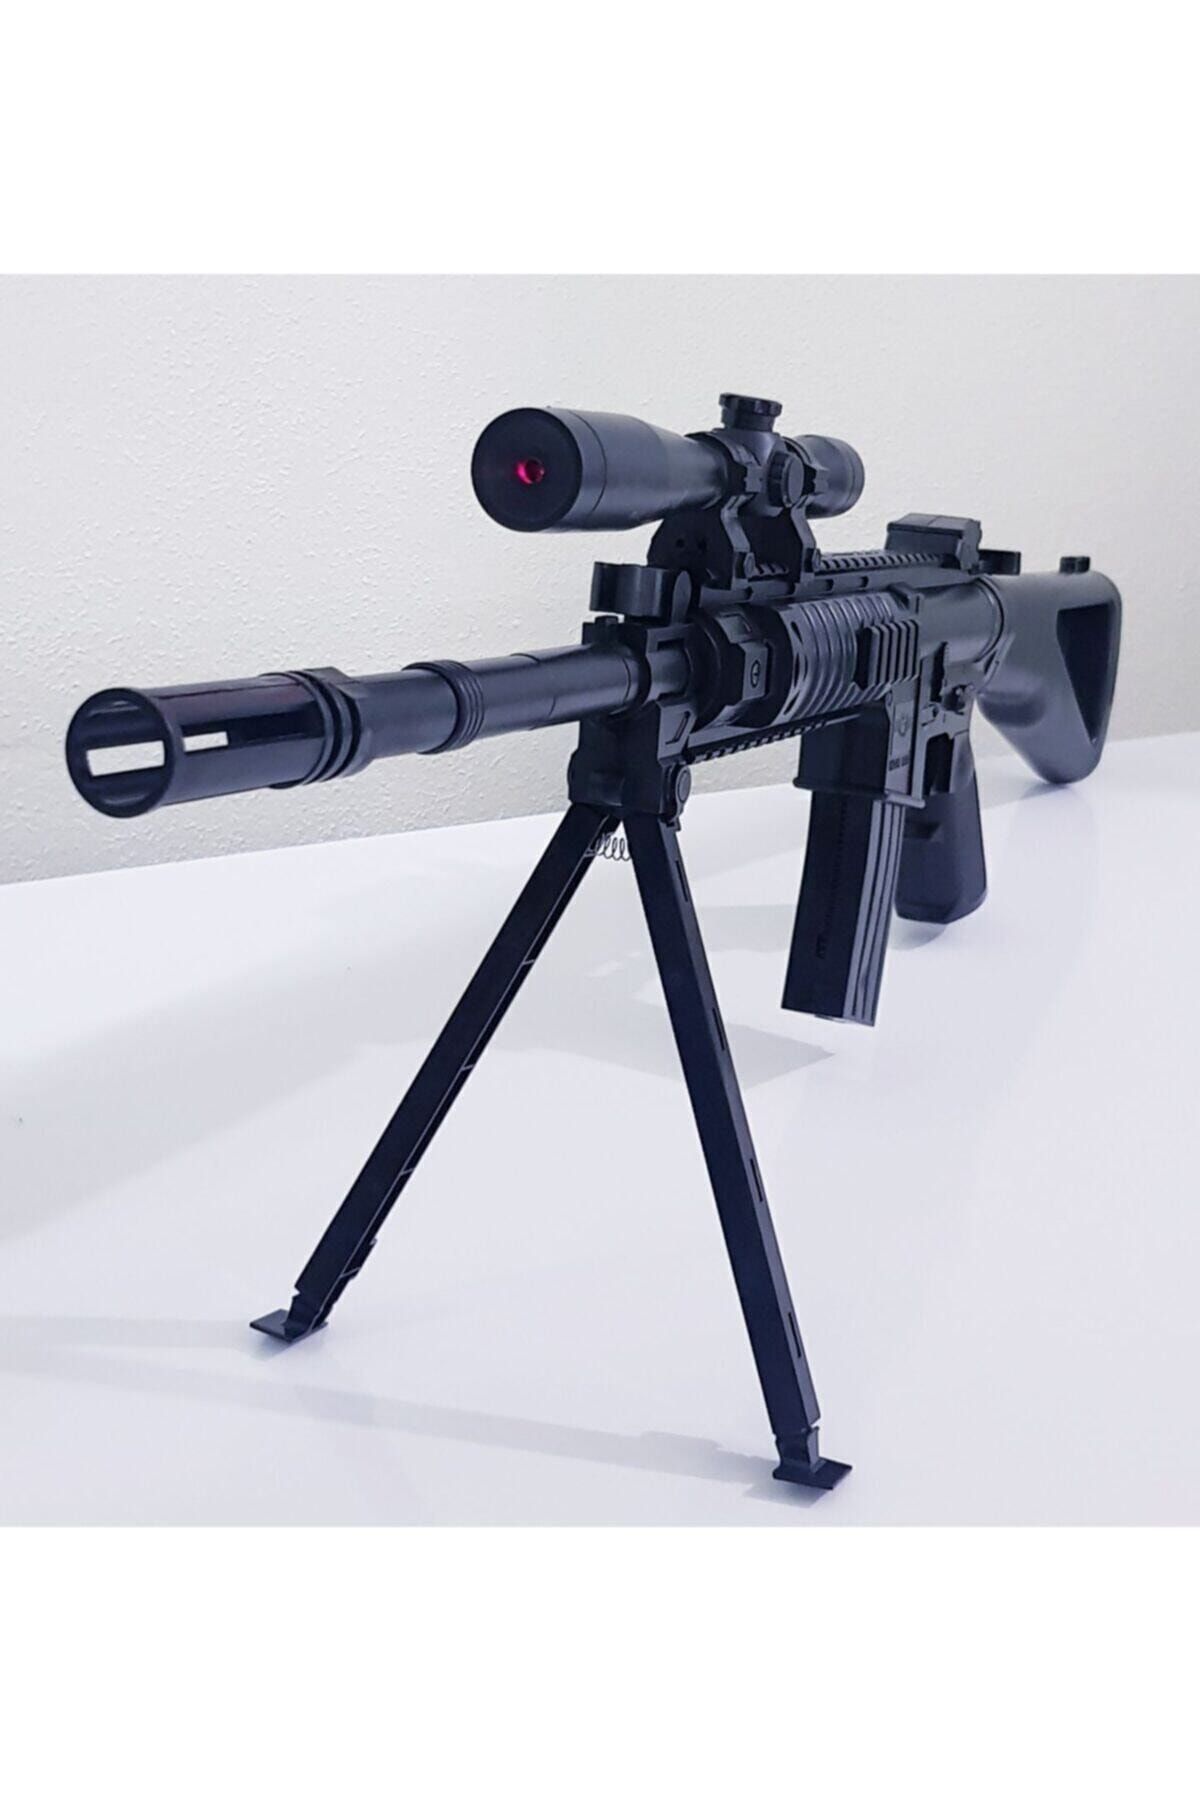 Genel Markalar Plastik Oyuncak Sniper Silah Oyuncak Boncuk Atan Keskin Nişancı Silahı Oyuncak Keskin Nişancı Tüfeği